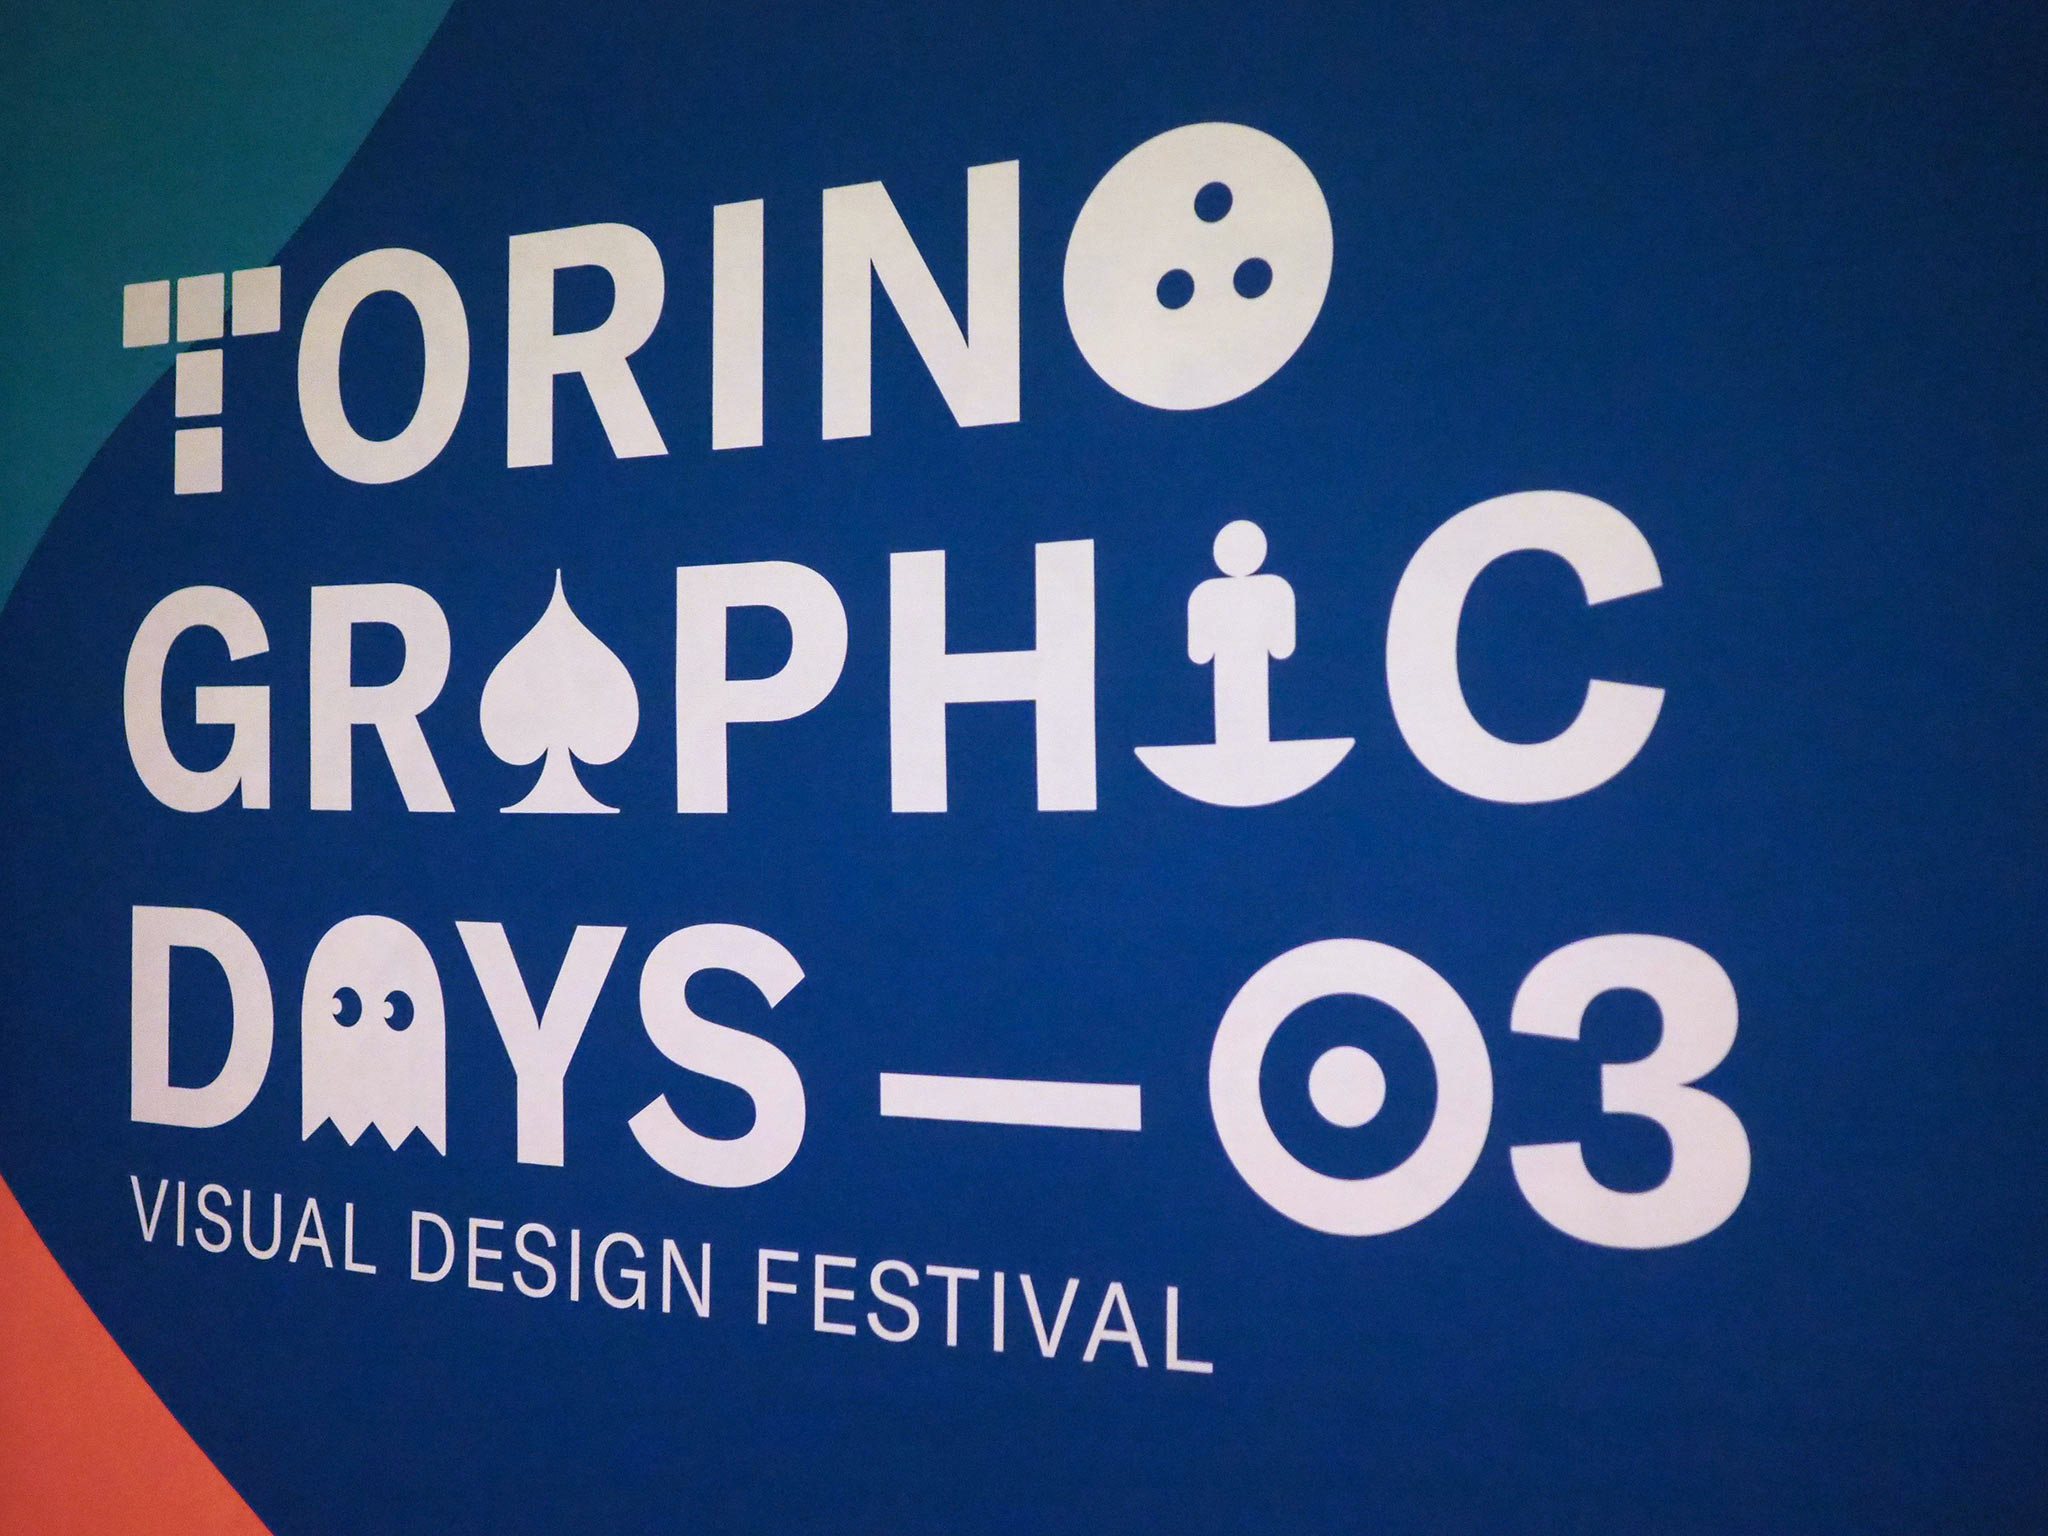 Torino-Graphic-Days